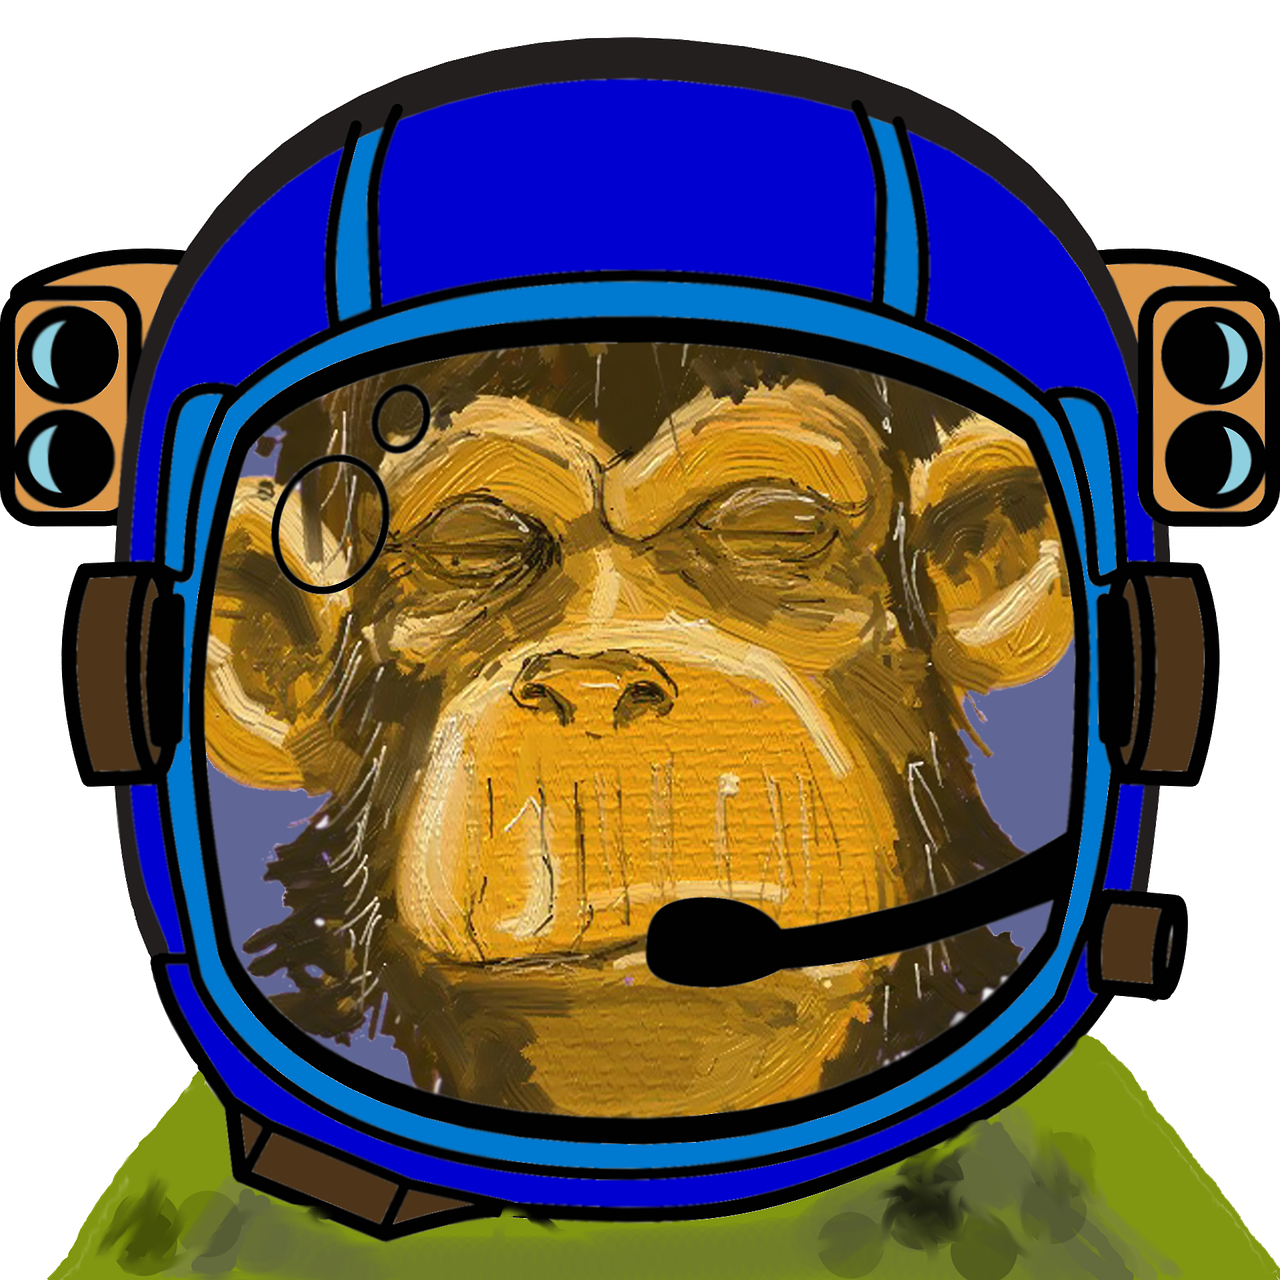 General 1280x1280 monkey spacesuit digital art